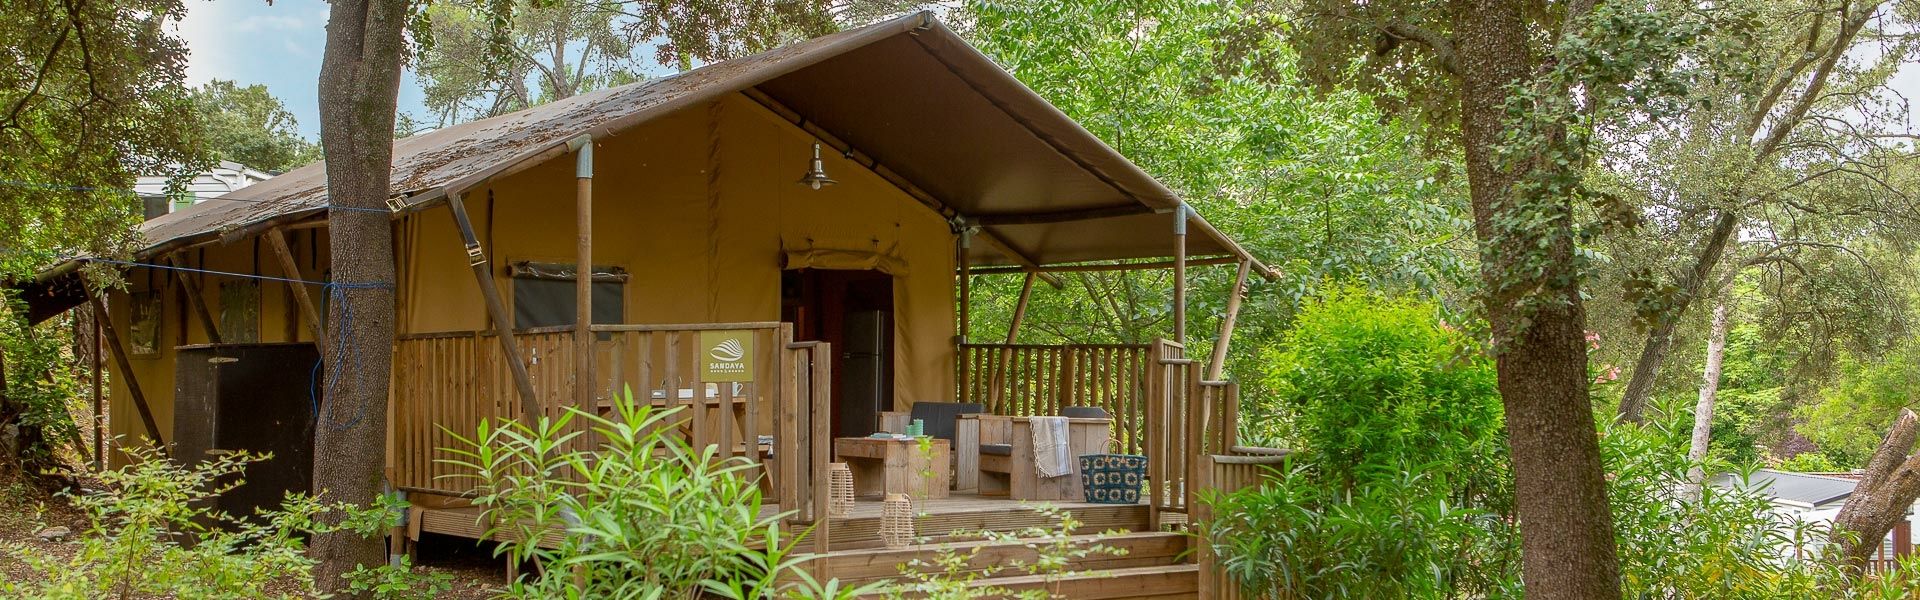 Camping Tiendas lodge